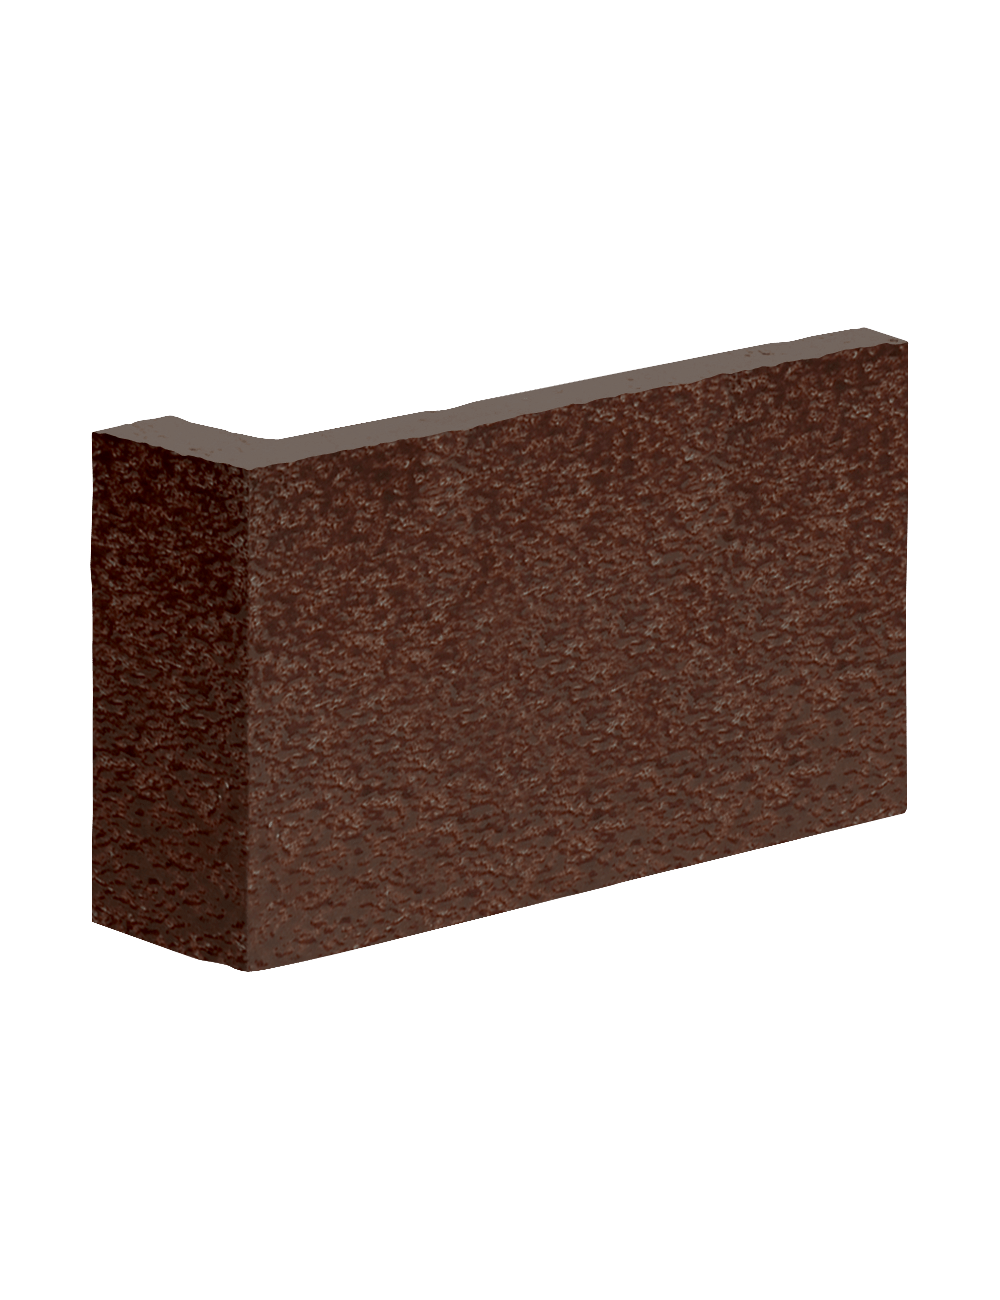 Colțar ceramic Klinker - Maro glazurat (Brown glazed) (RF02) 120/35X65X10